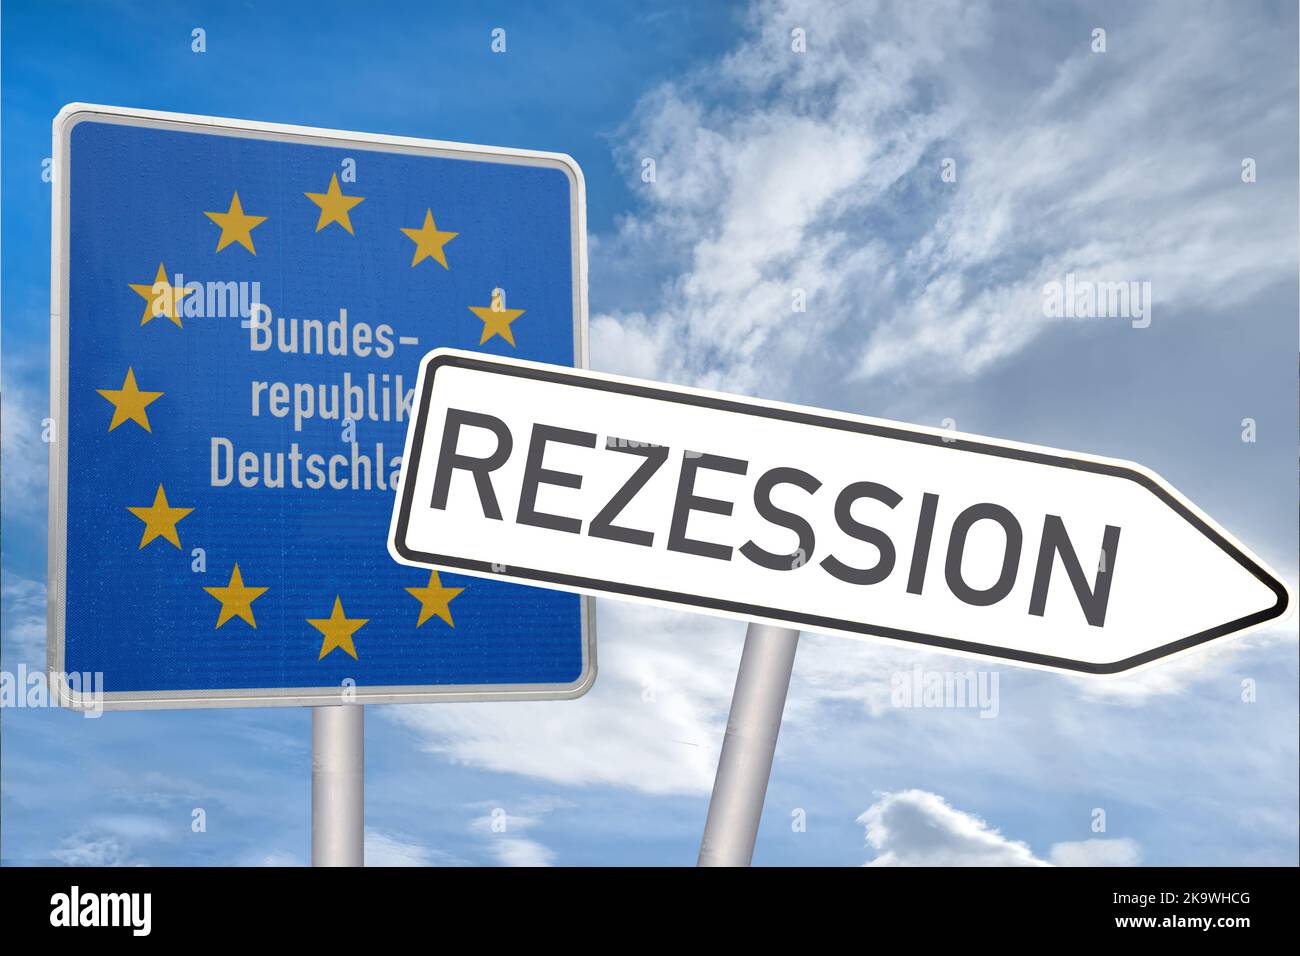 Symbolbild Rezession: Grenzschild der Bundesrepublik Deutschland, daneben zeigt ein Schild in Richtung Rezession (Composing) Stock Photo